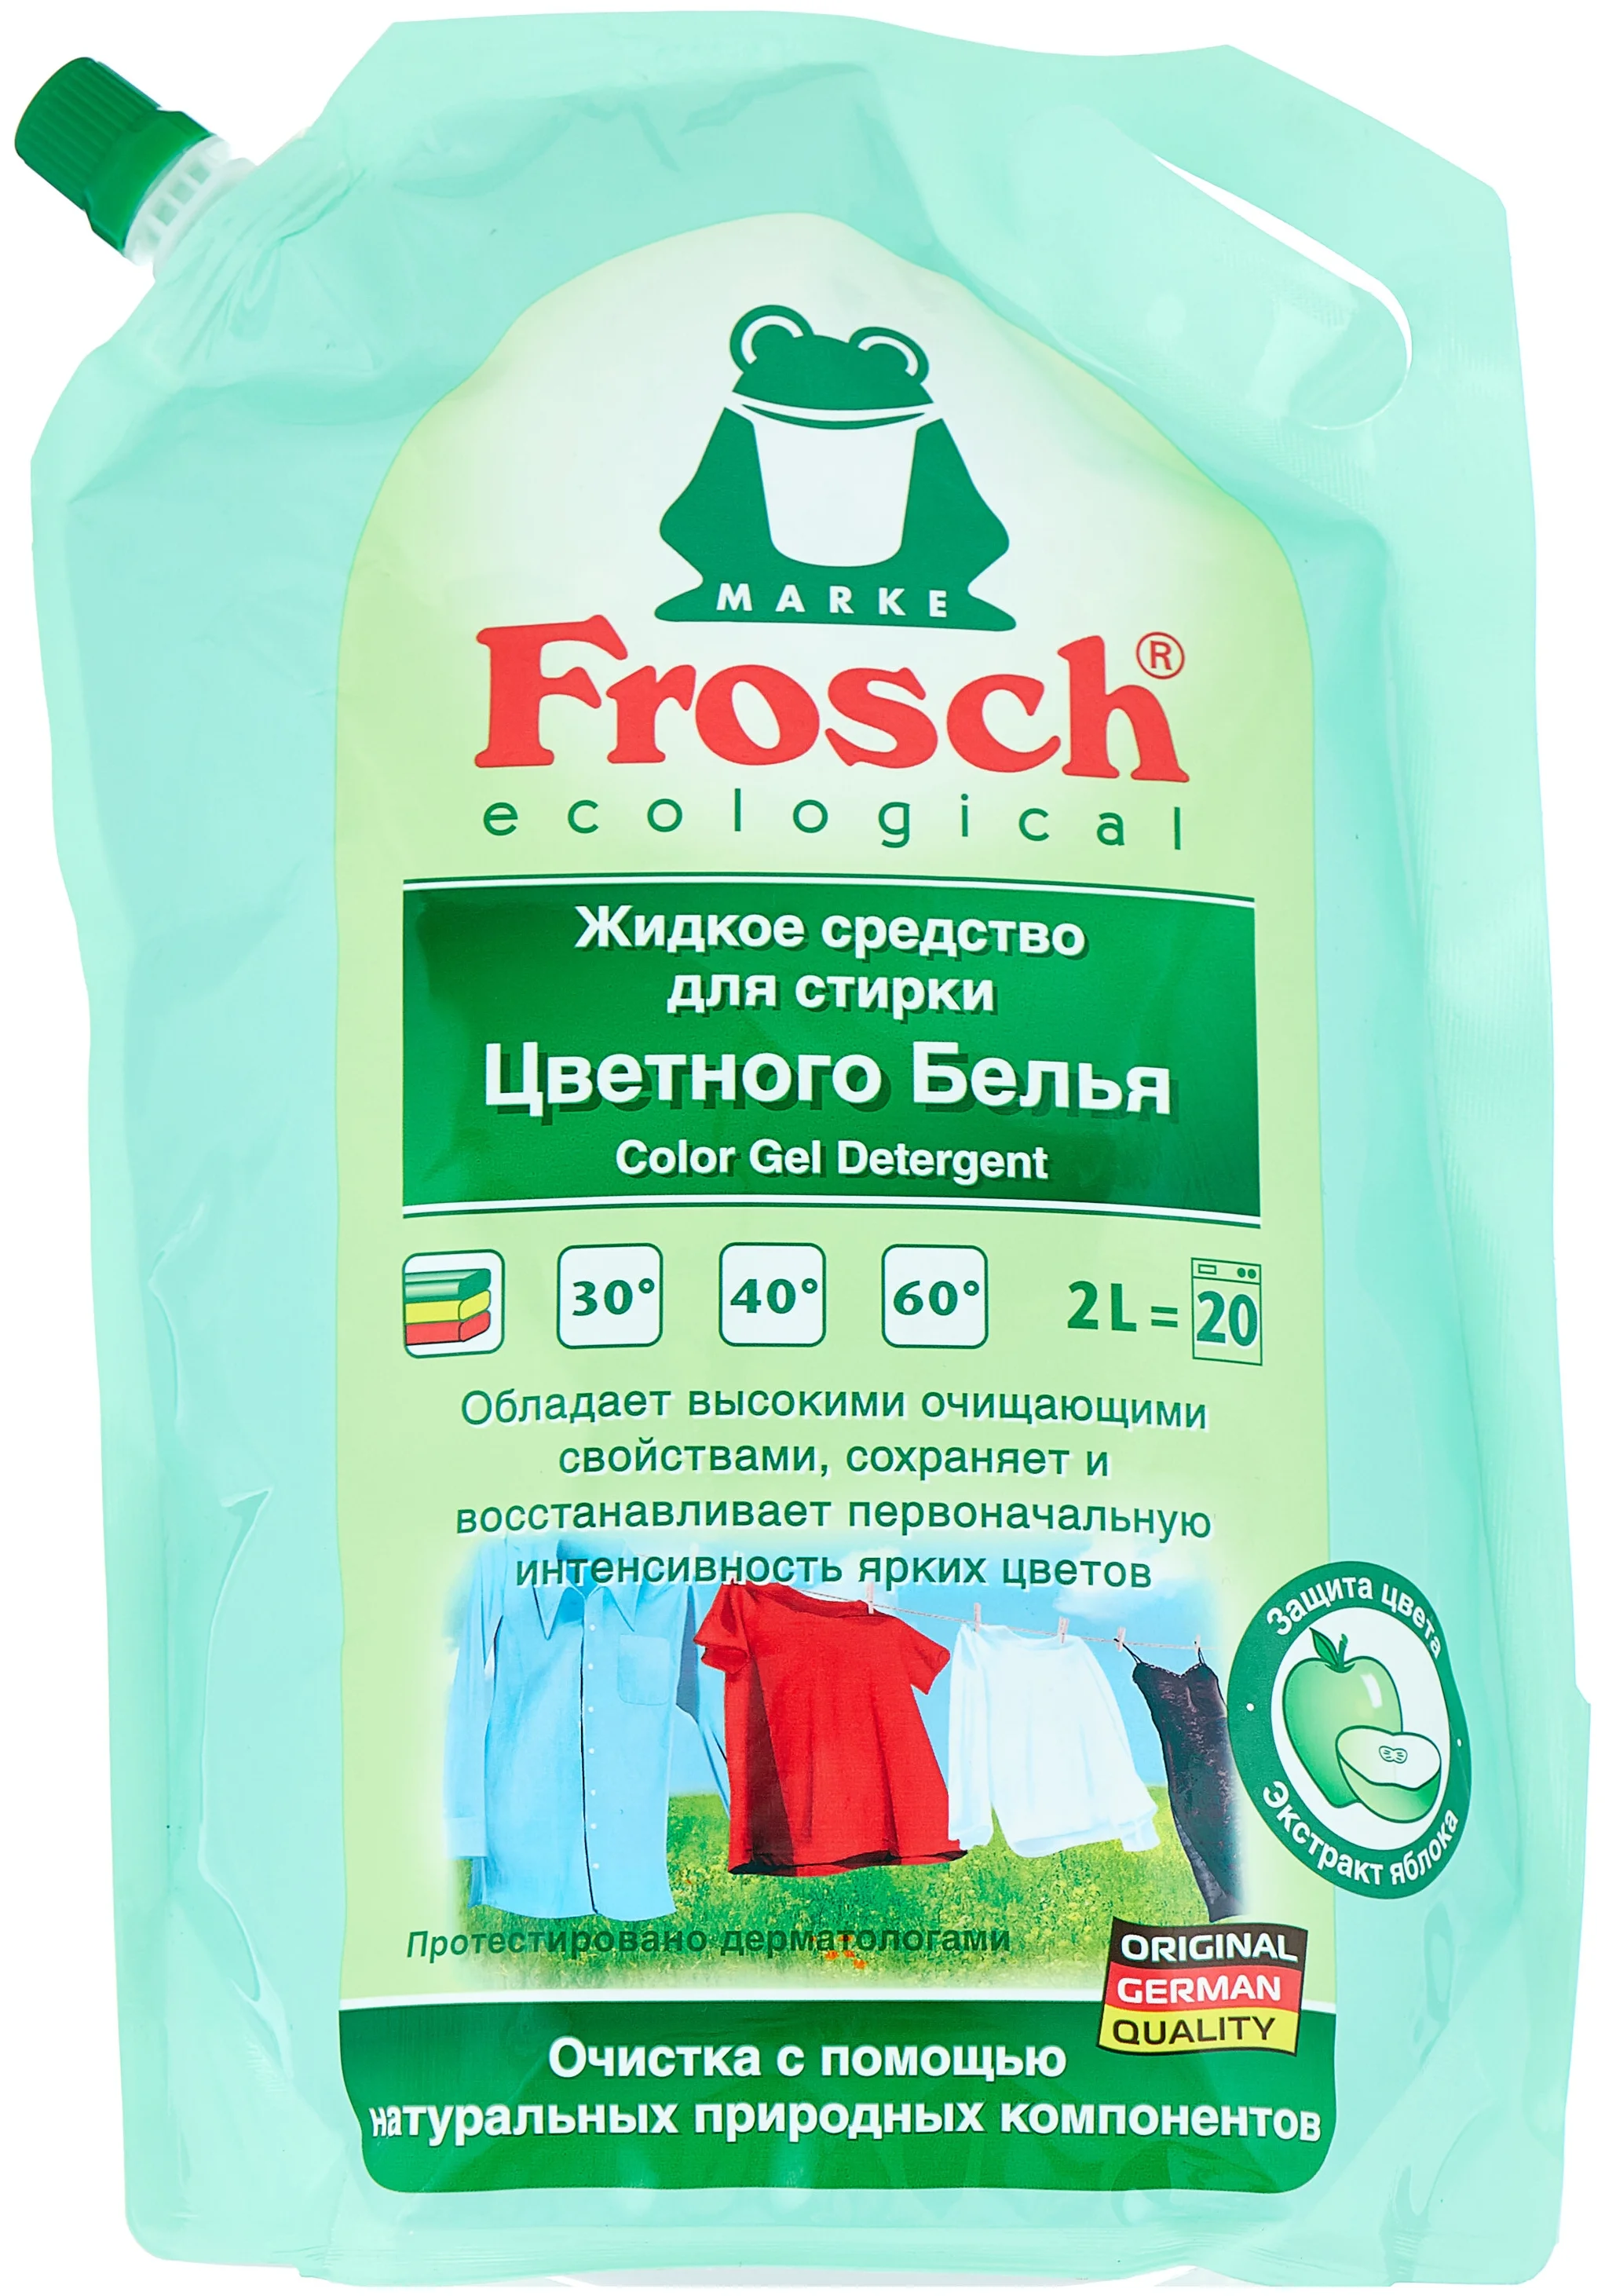 Frosch "Яблоко" - назначение: для цветных тканей, для черных и темных тканей